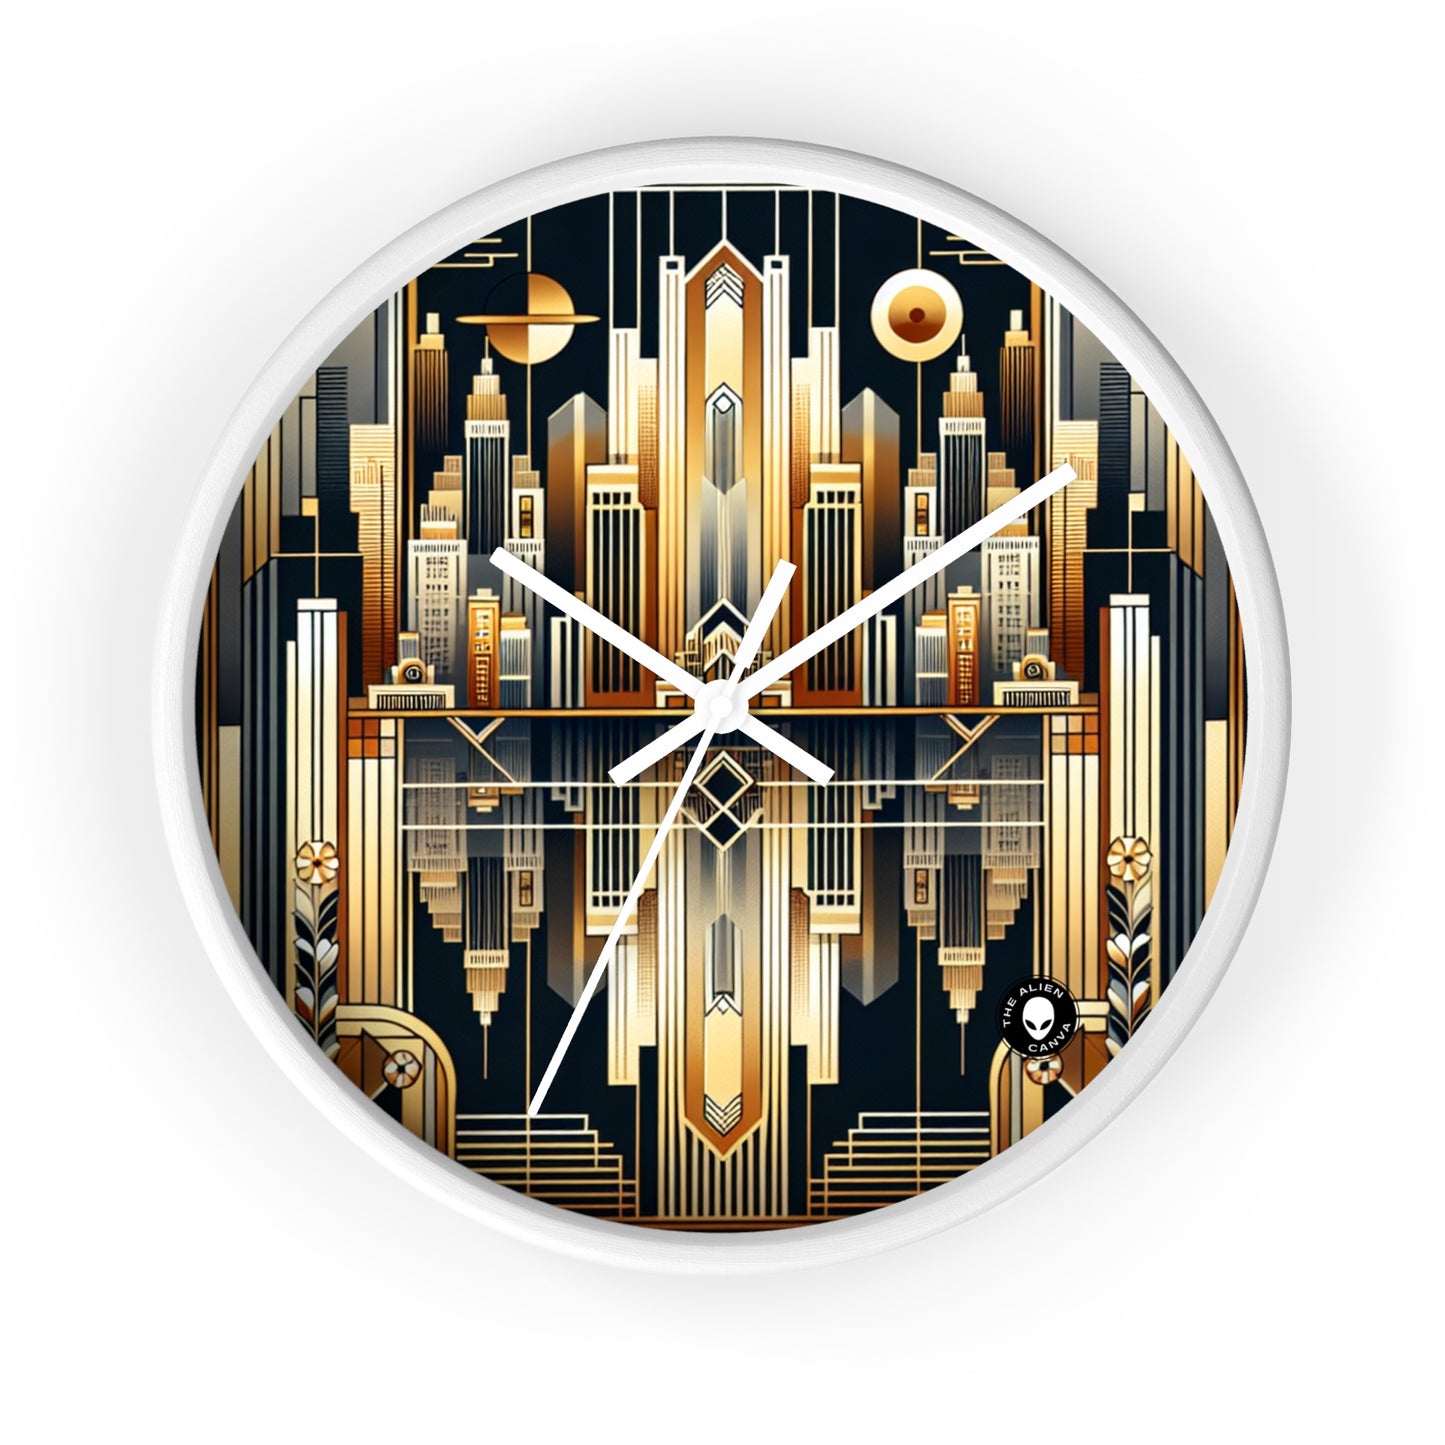 "Luxe Déco : Élégance Artistique au Grand Hôtel" - L'Horloge Murale Alien Art Déco